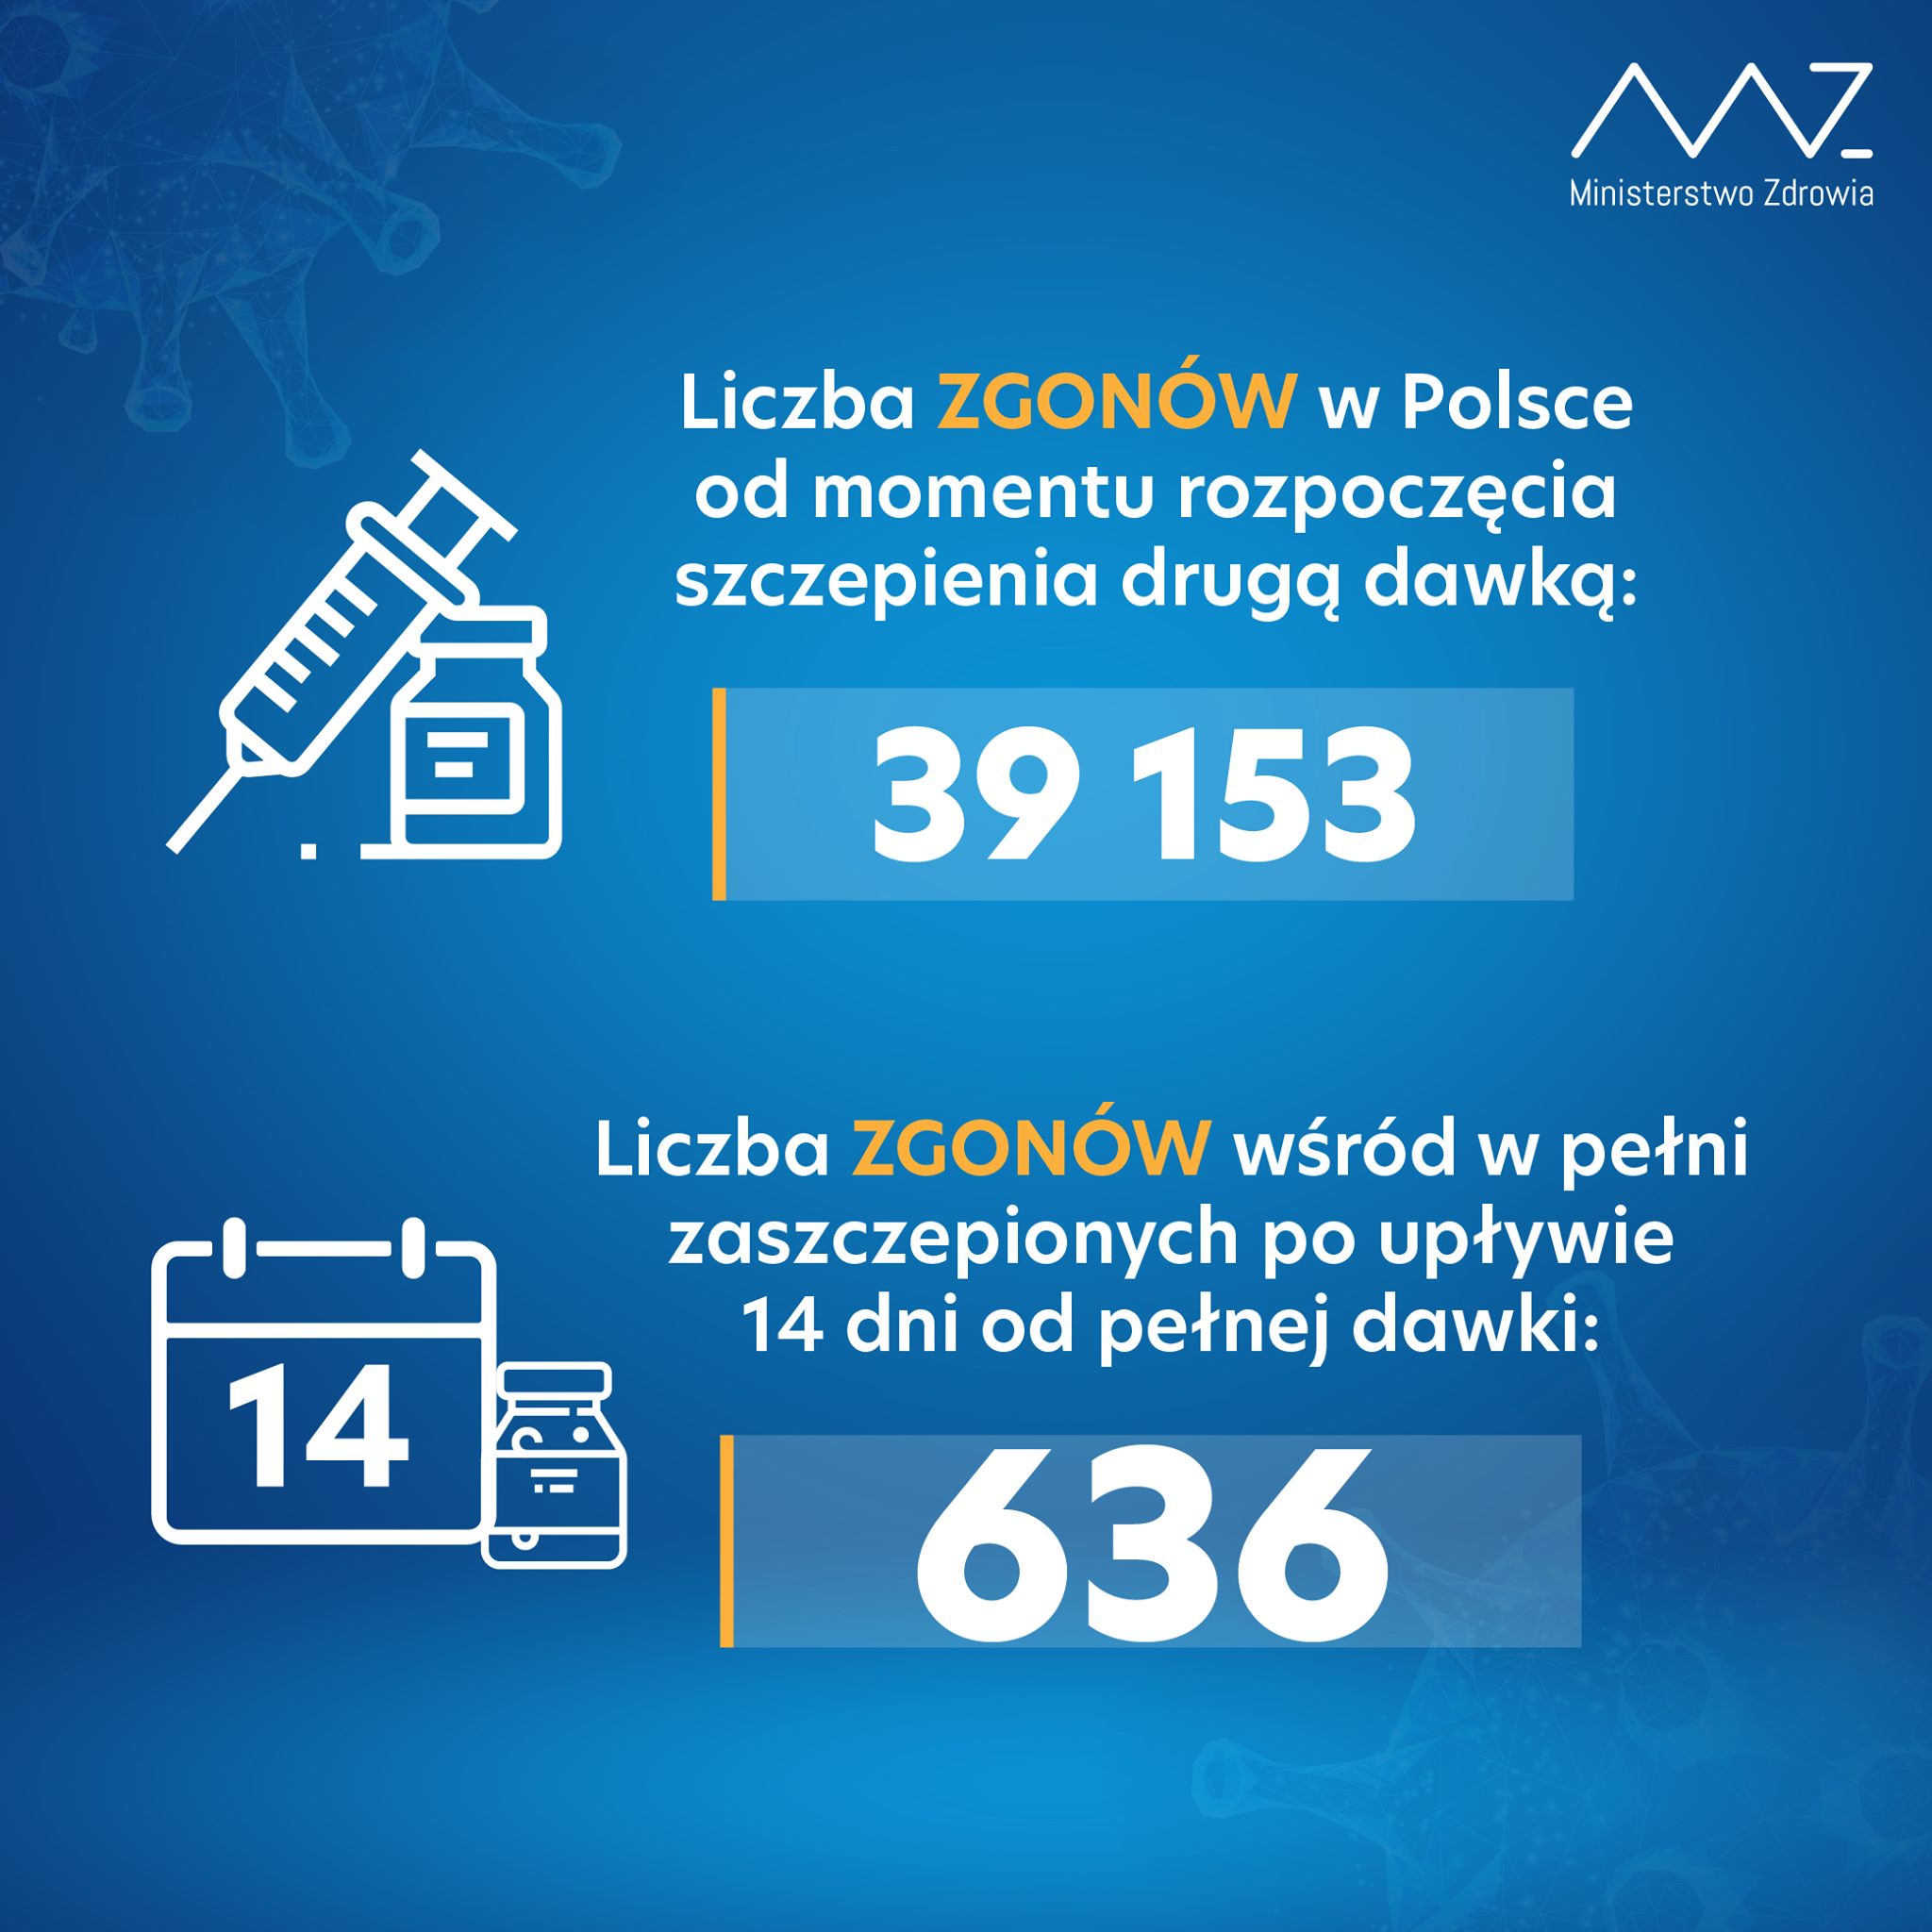 Liczba zgonów w Polsce od momentu rozpoczęcia szczepienia drugą dawką